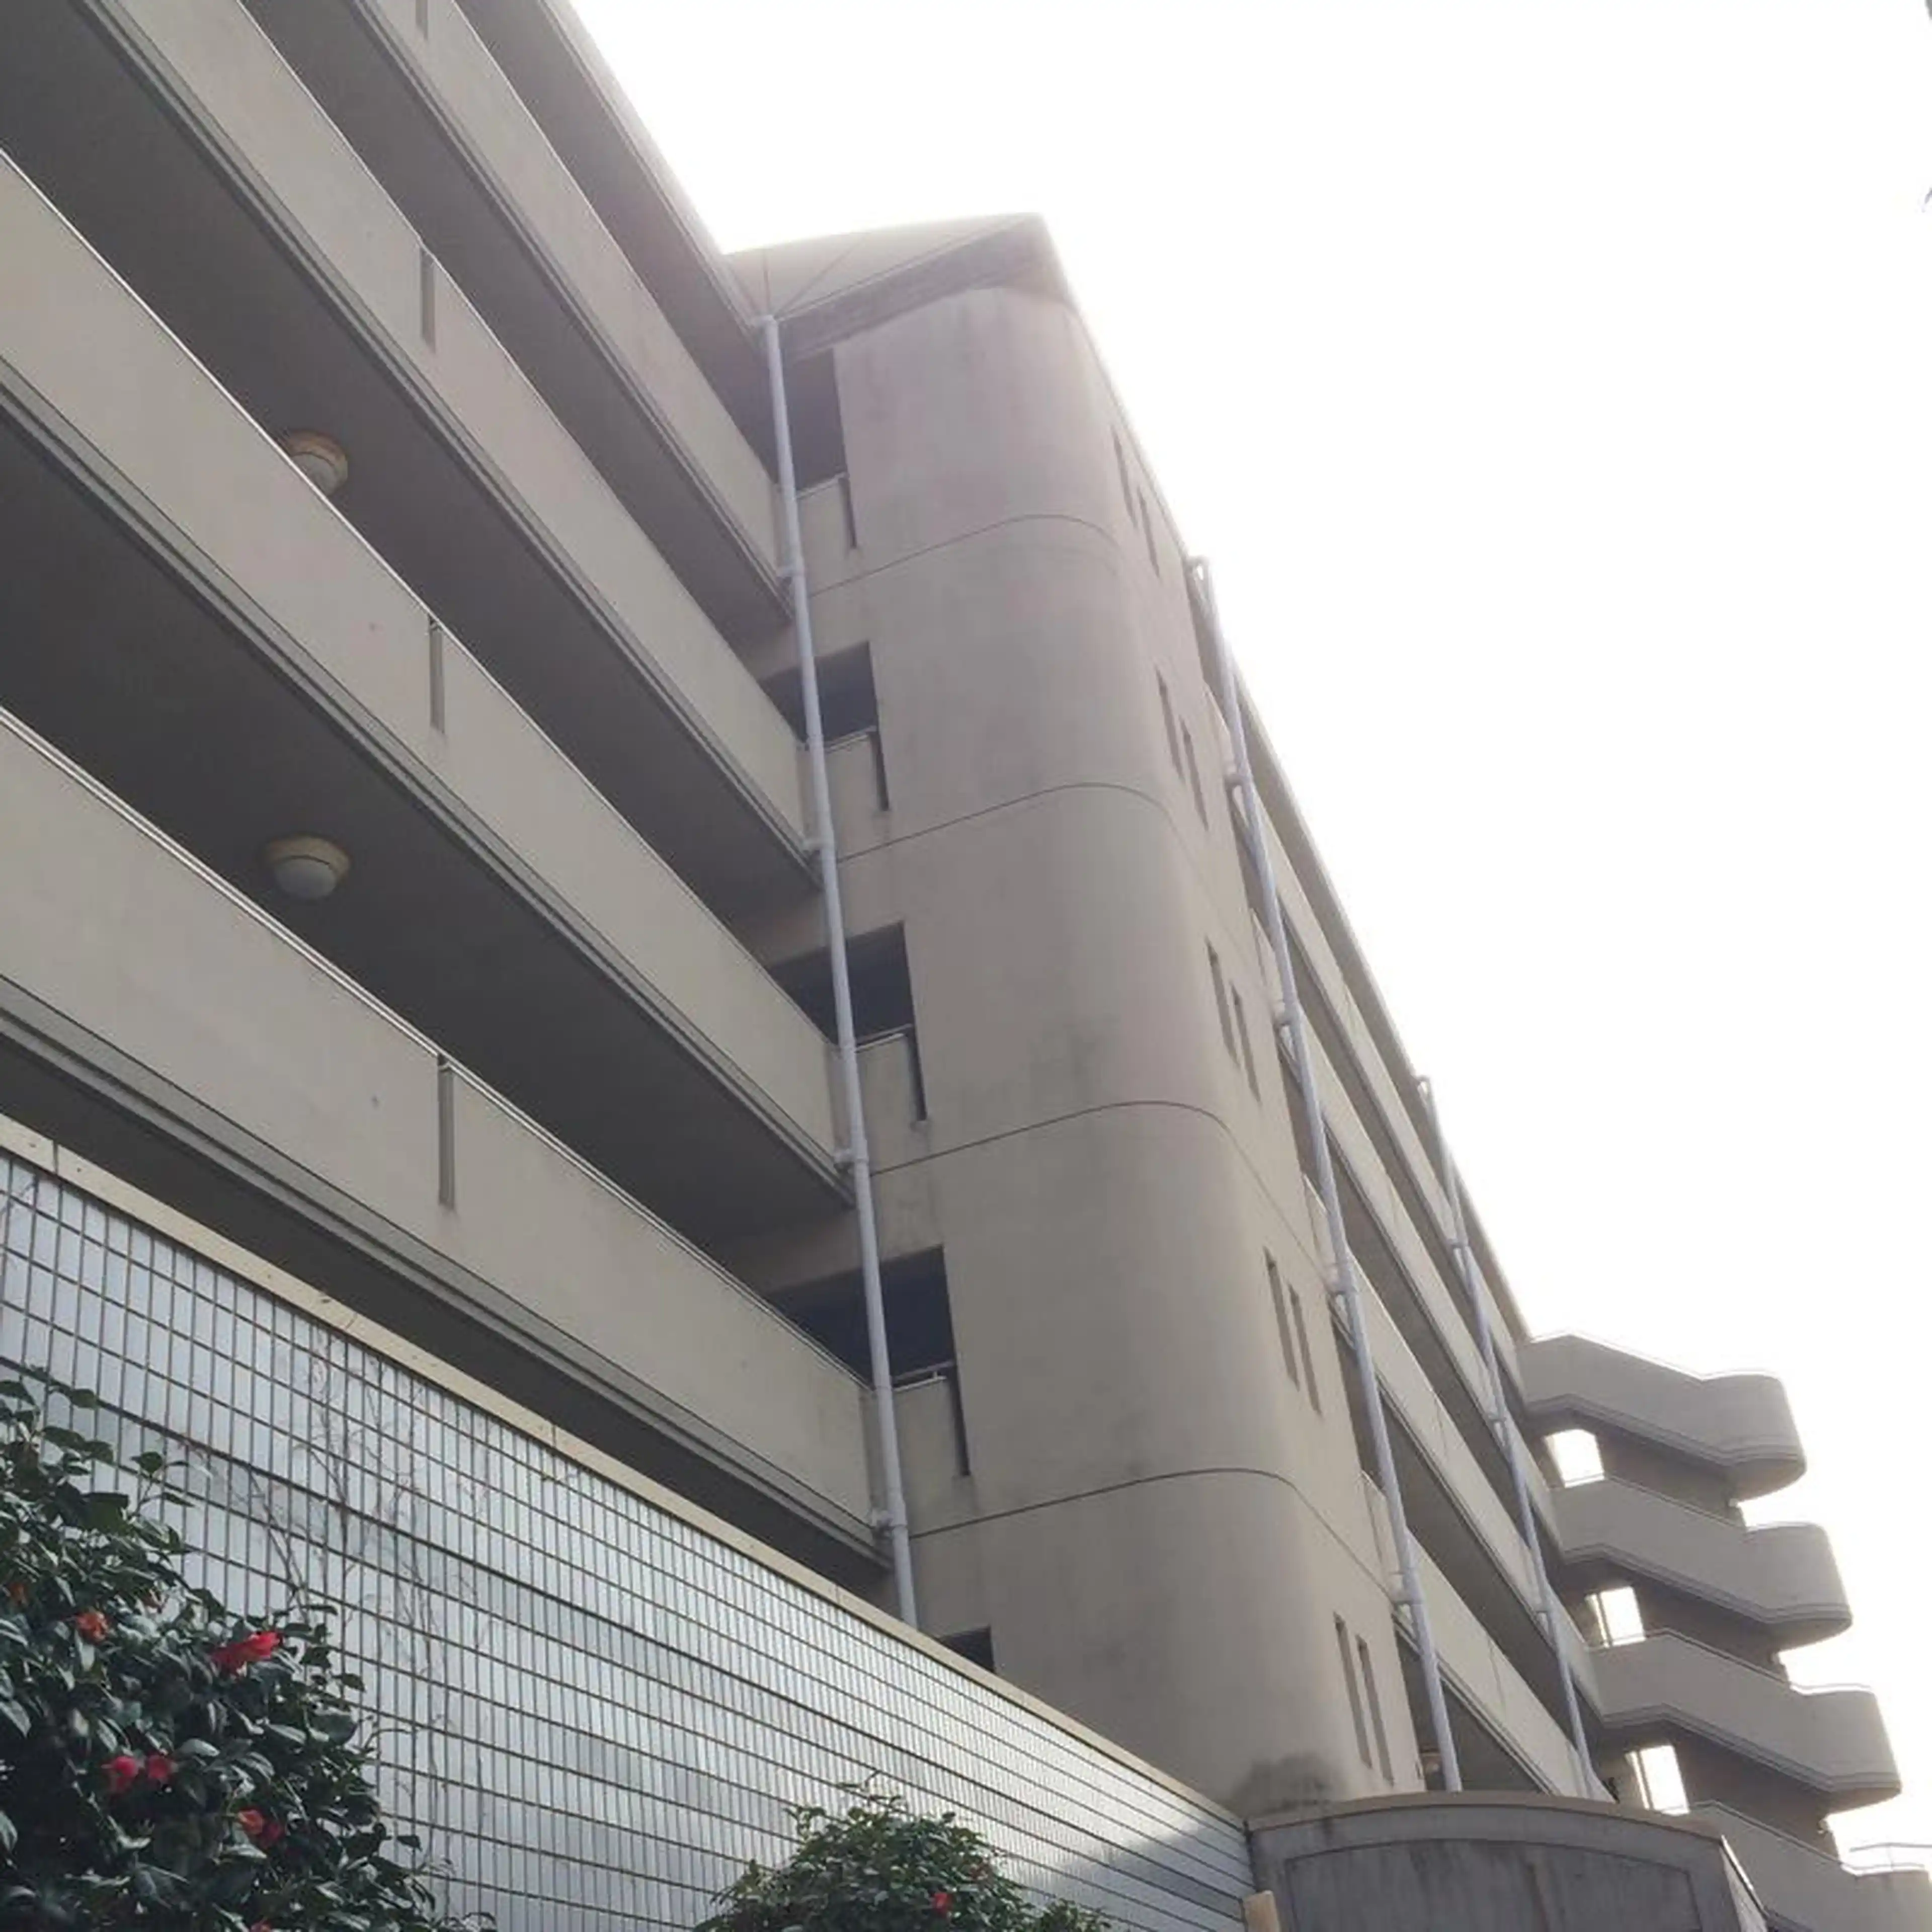 愛知県東京事務所公舎 外観